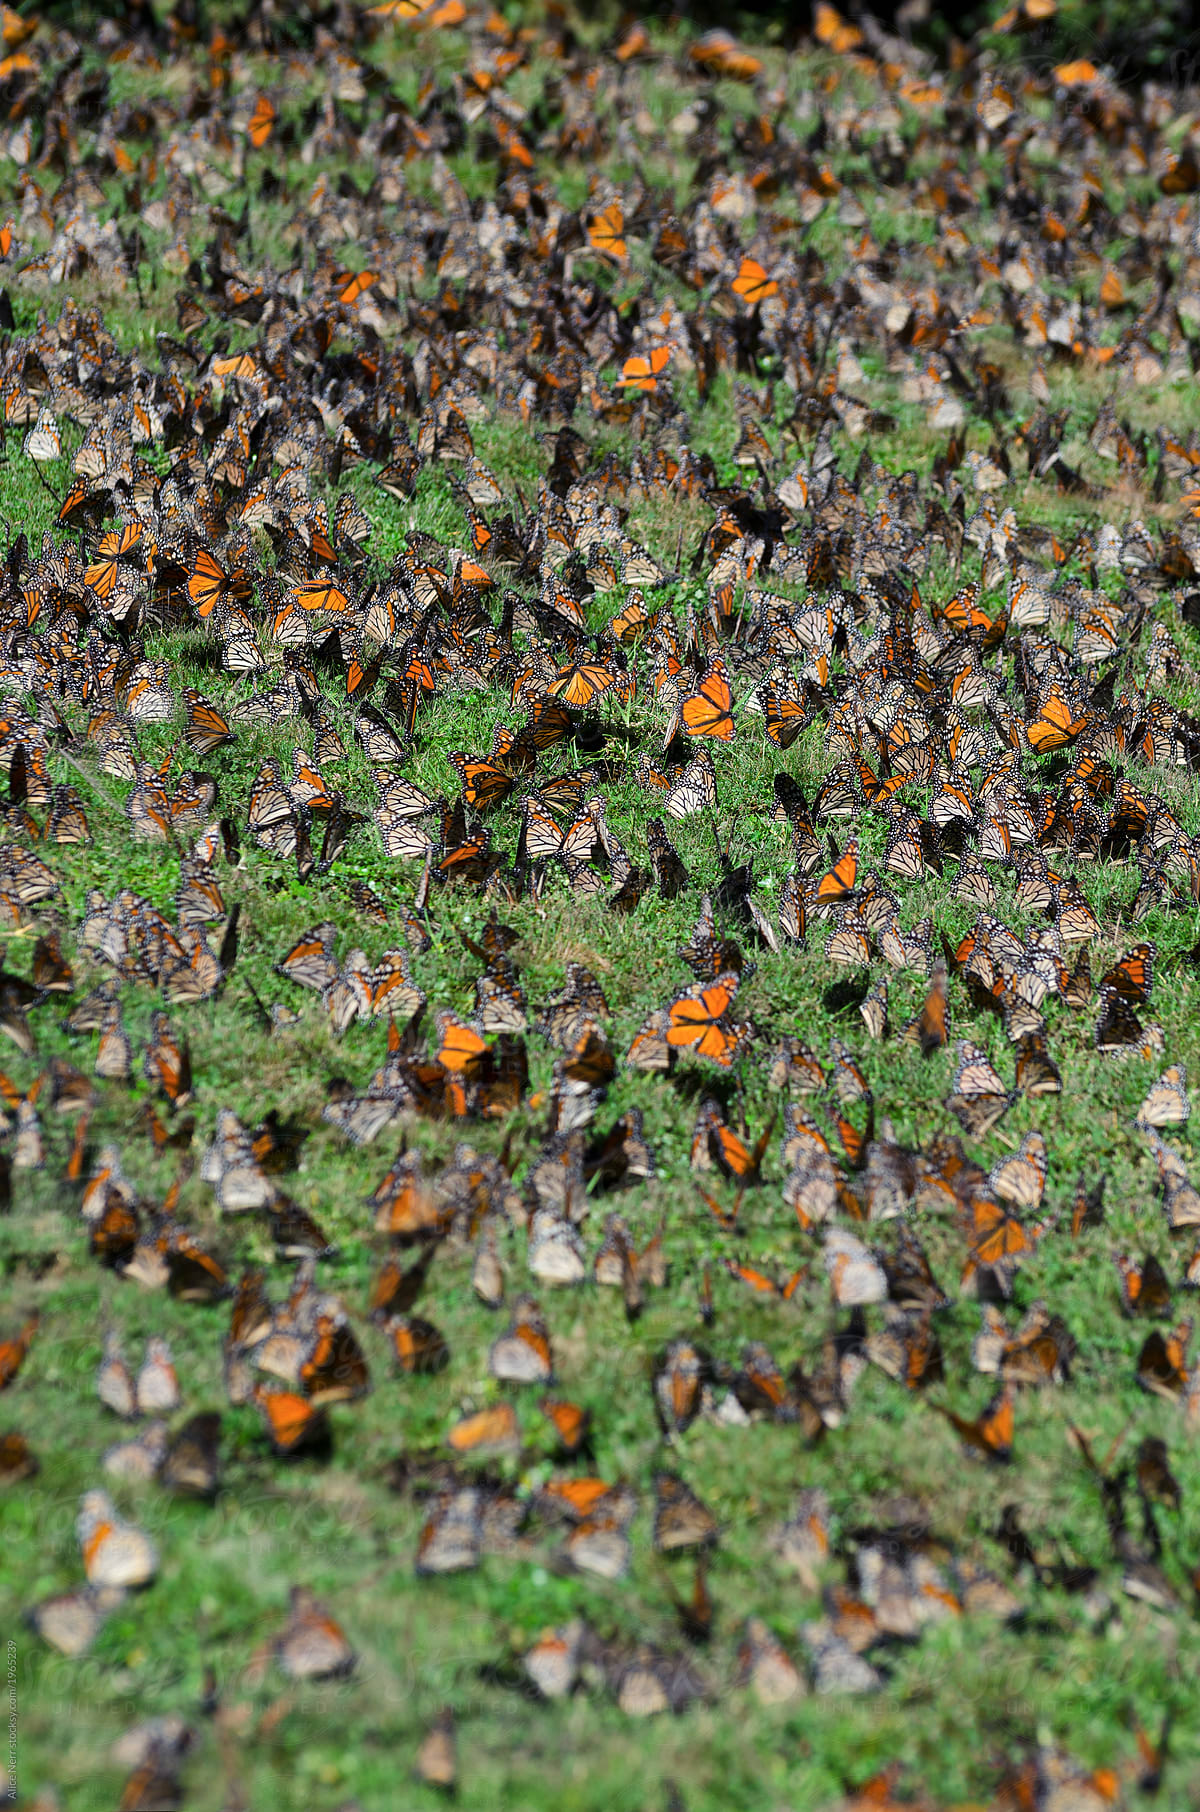 Numerous monarch butterflies drinking water